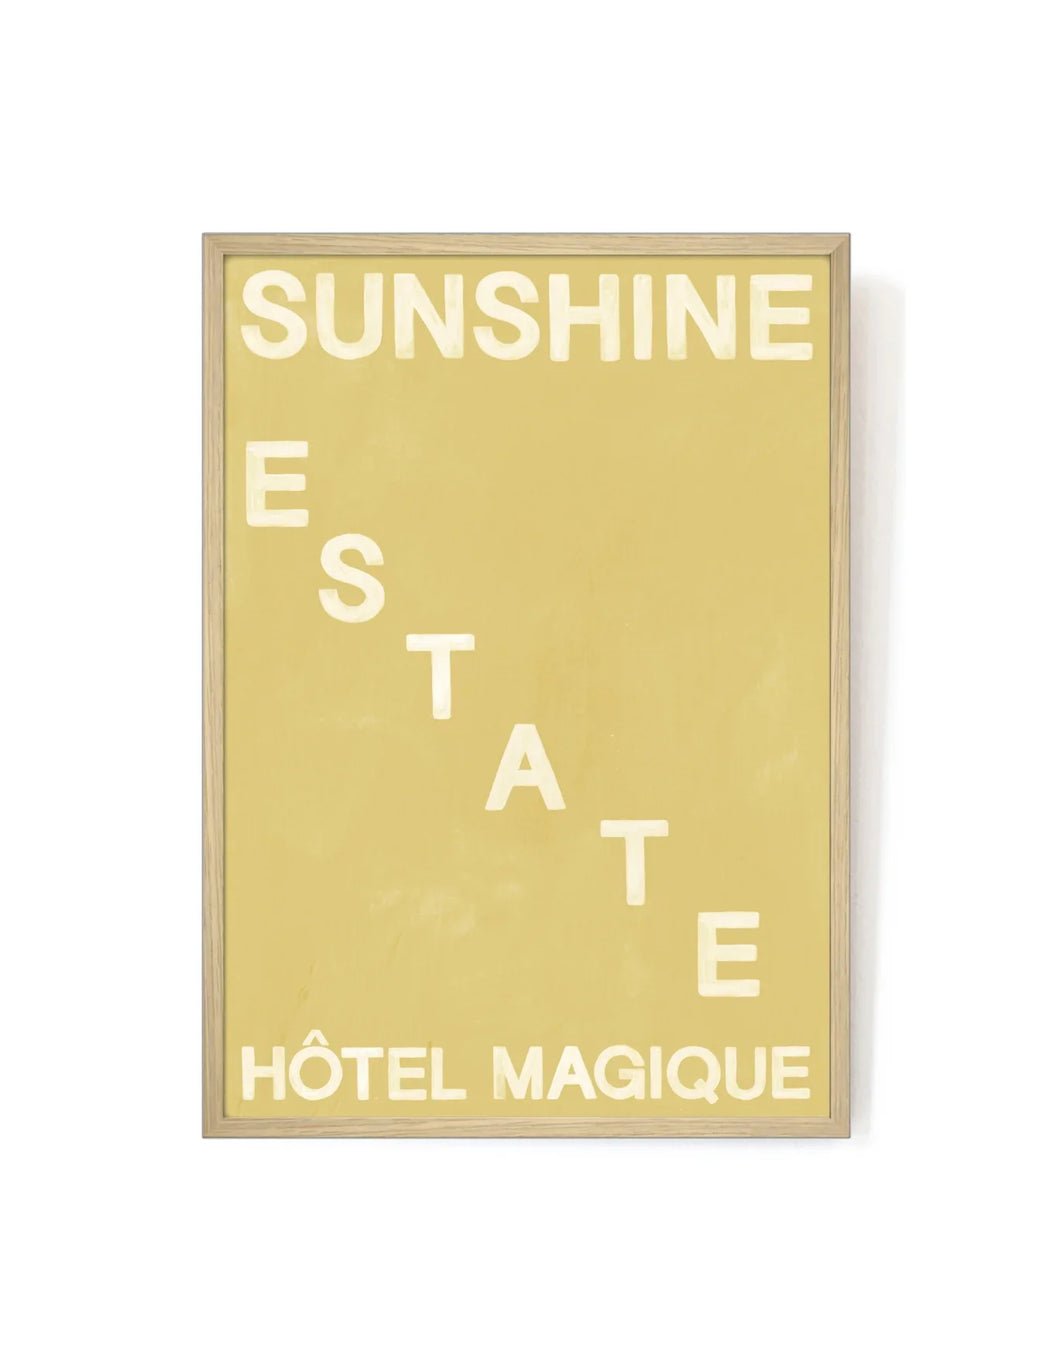 Hotel Magique Sunshine Estate Art Print | Various sizes